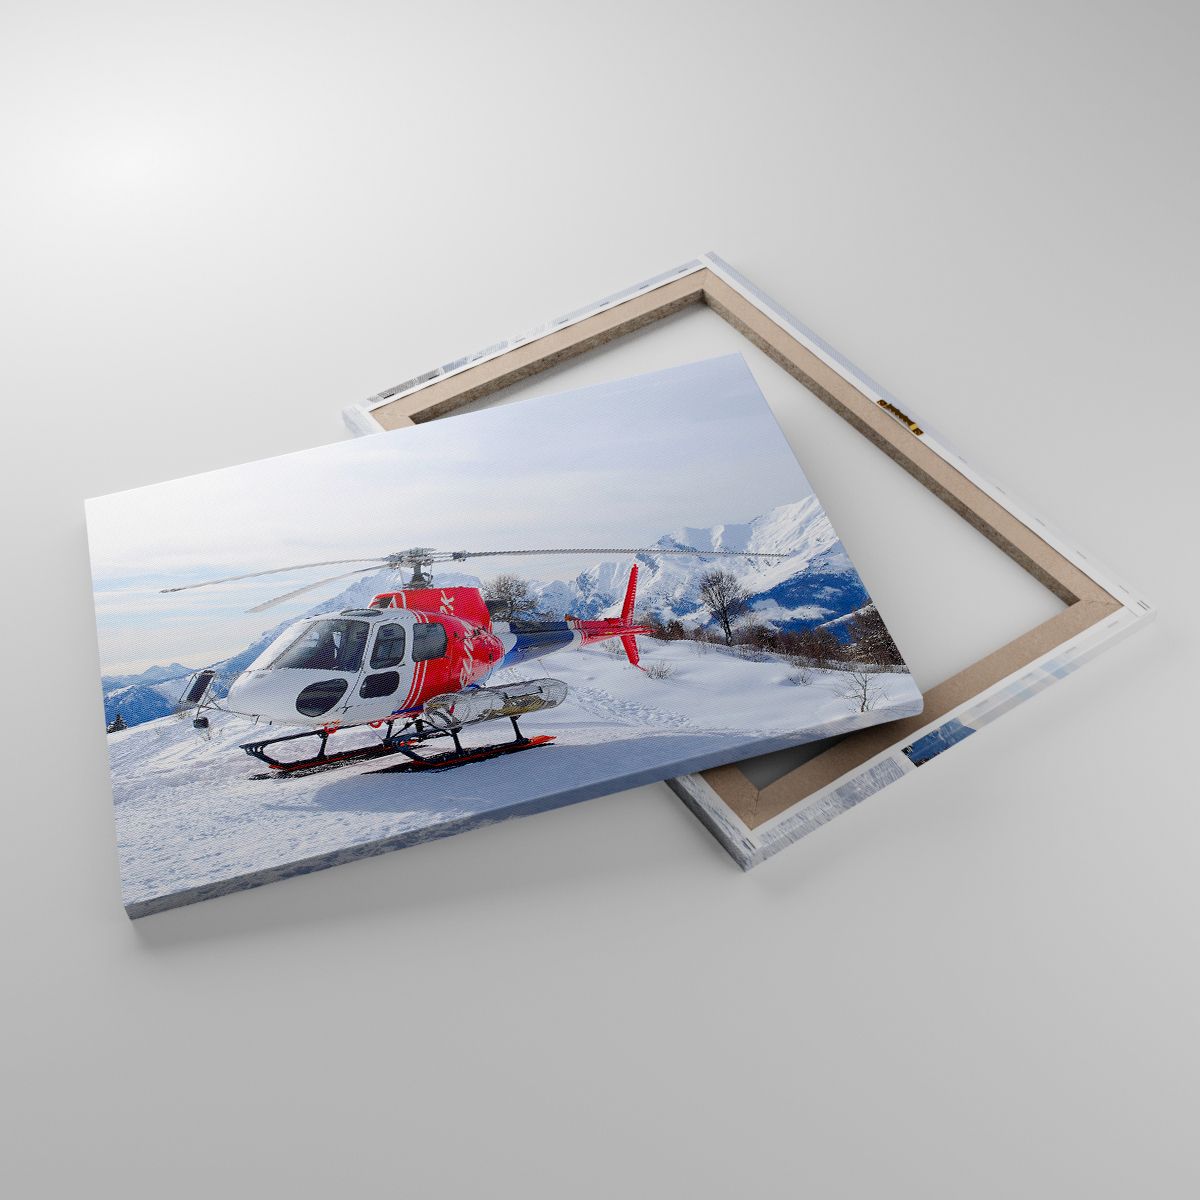 Leinwandbild Hubschrauber, Leinwandbild Landschaft, Leinwandbild Alpen, Leinwandbild Berge, Leinwandbild Rettungshubschrauber